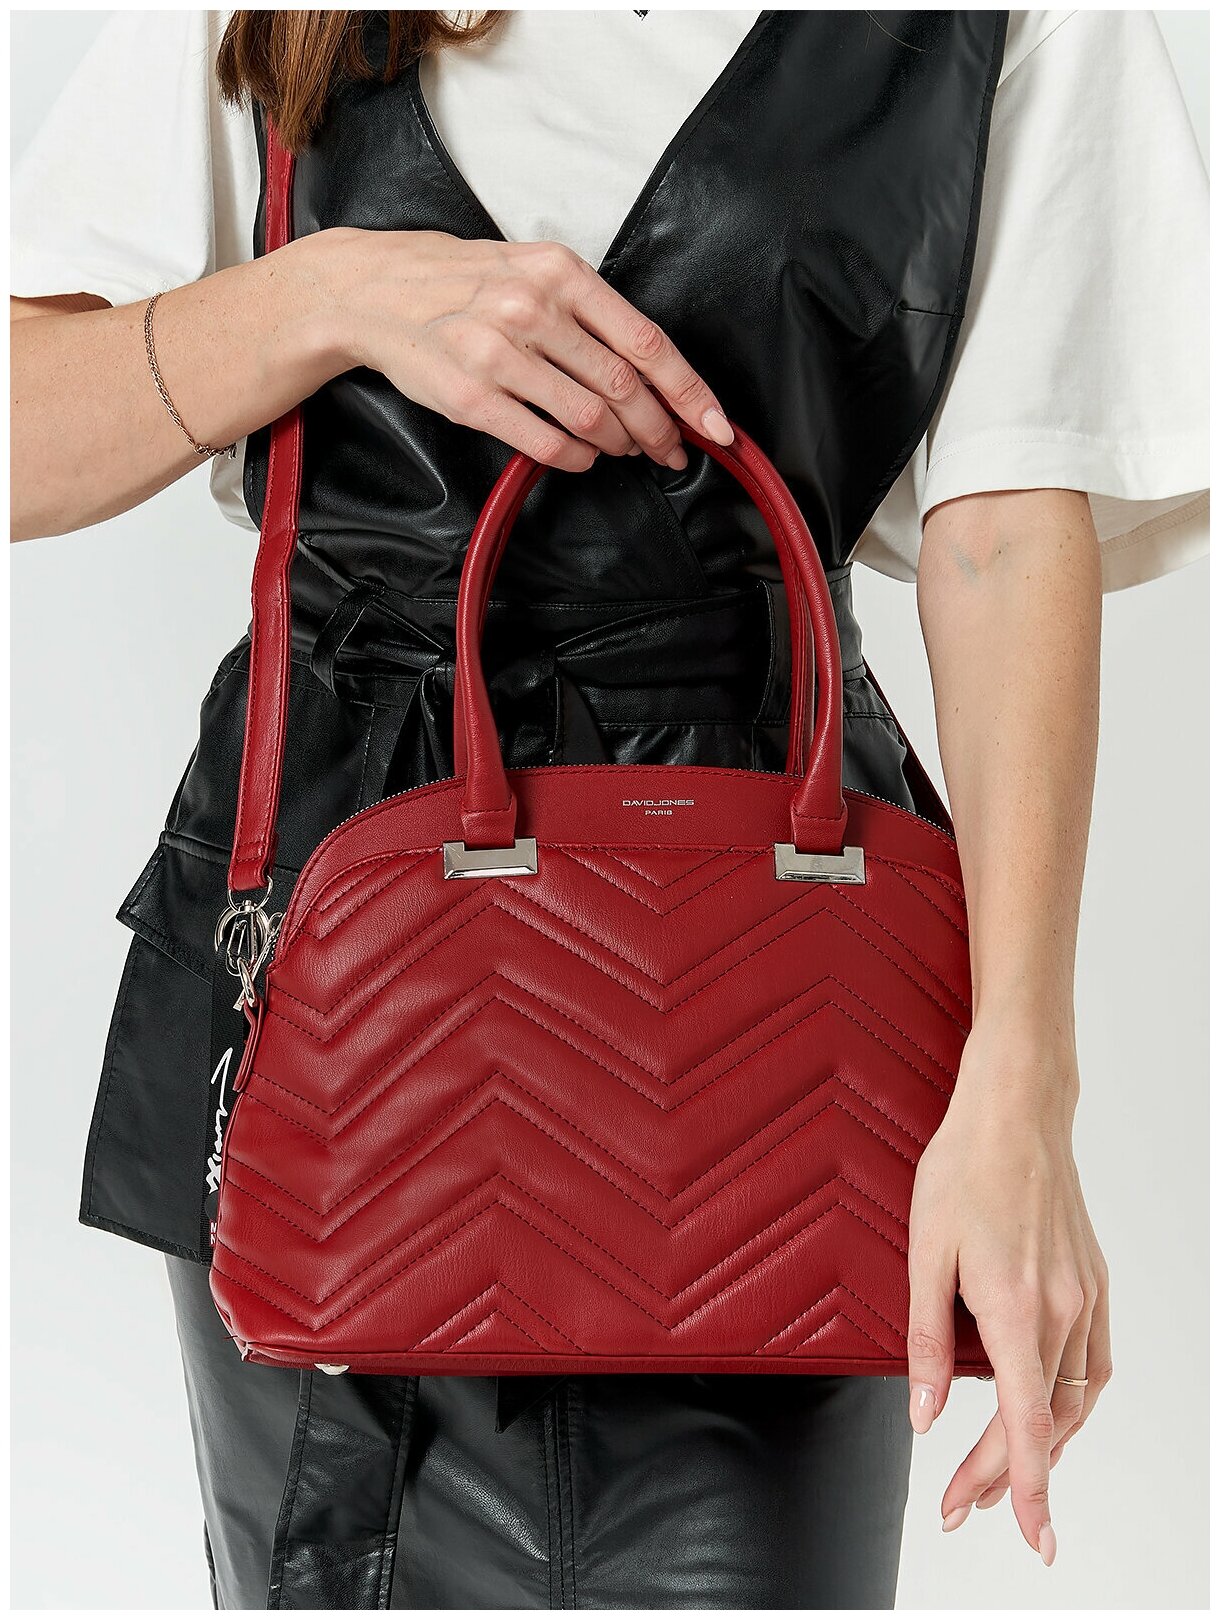 Стильная, влагозащитная, надежная и практичная женская сумка из экокожи David Jones 6615-1K/DARK-RED